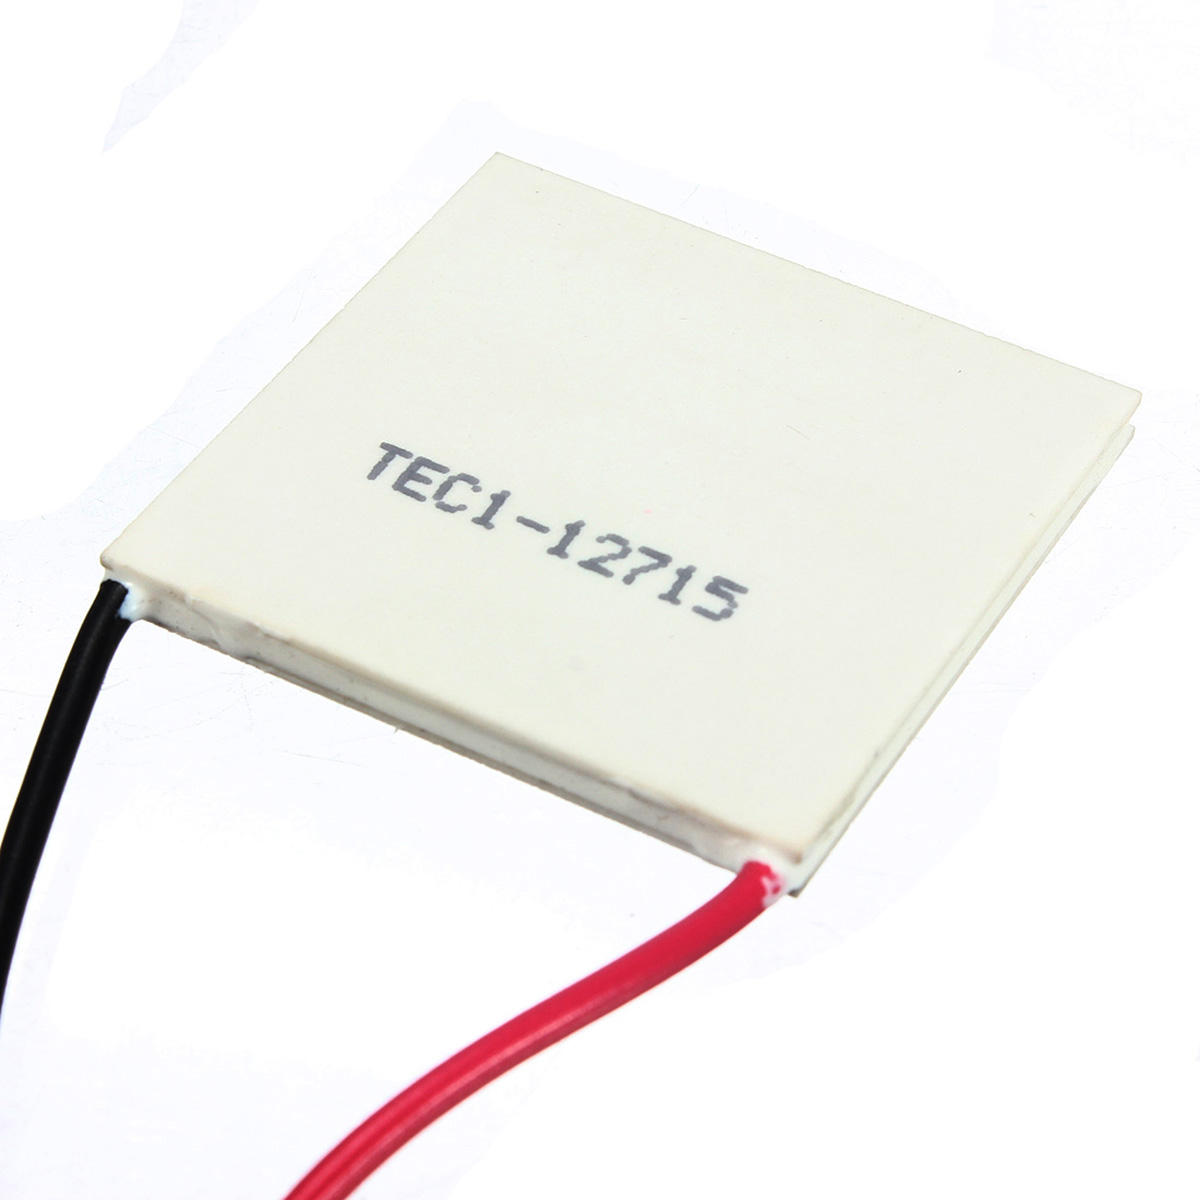 

3шт TEC1-12715 12V теплоотвод термоэлектрический охладитель модуль Пельтье Пластина